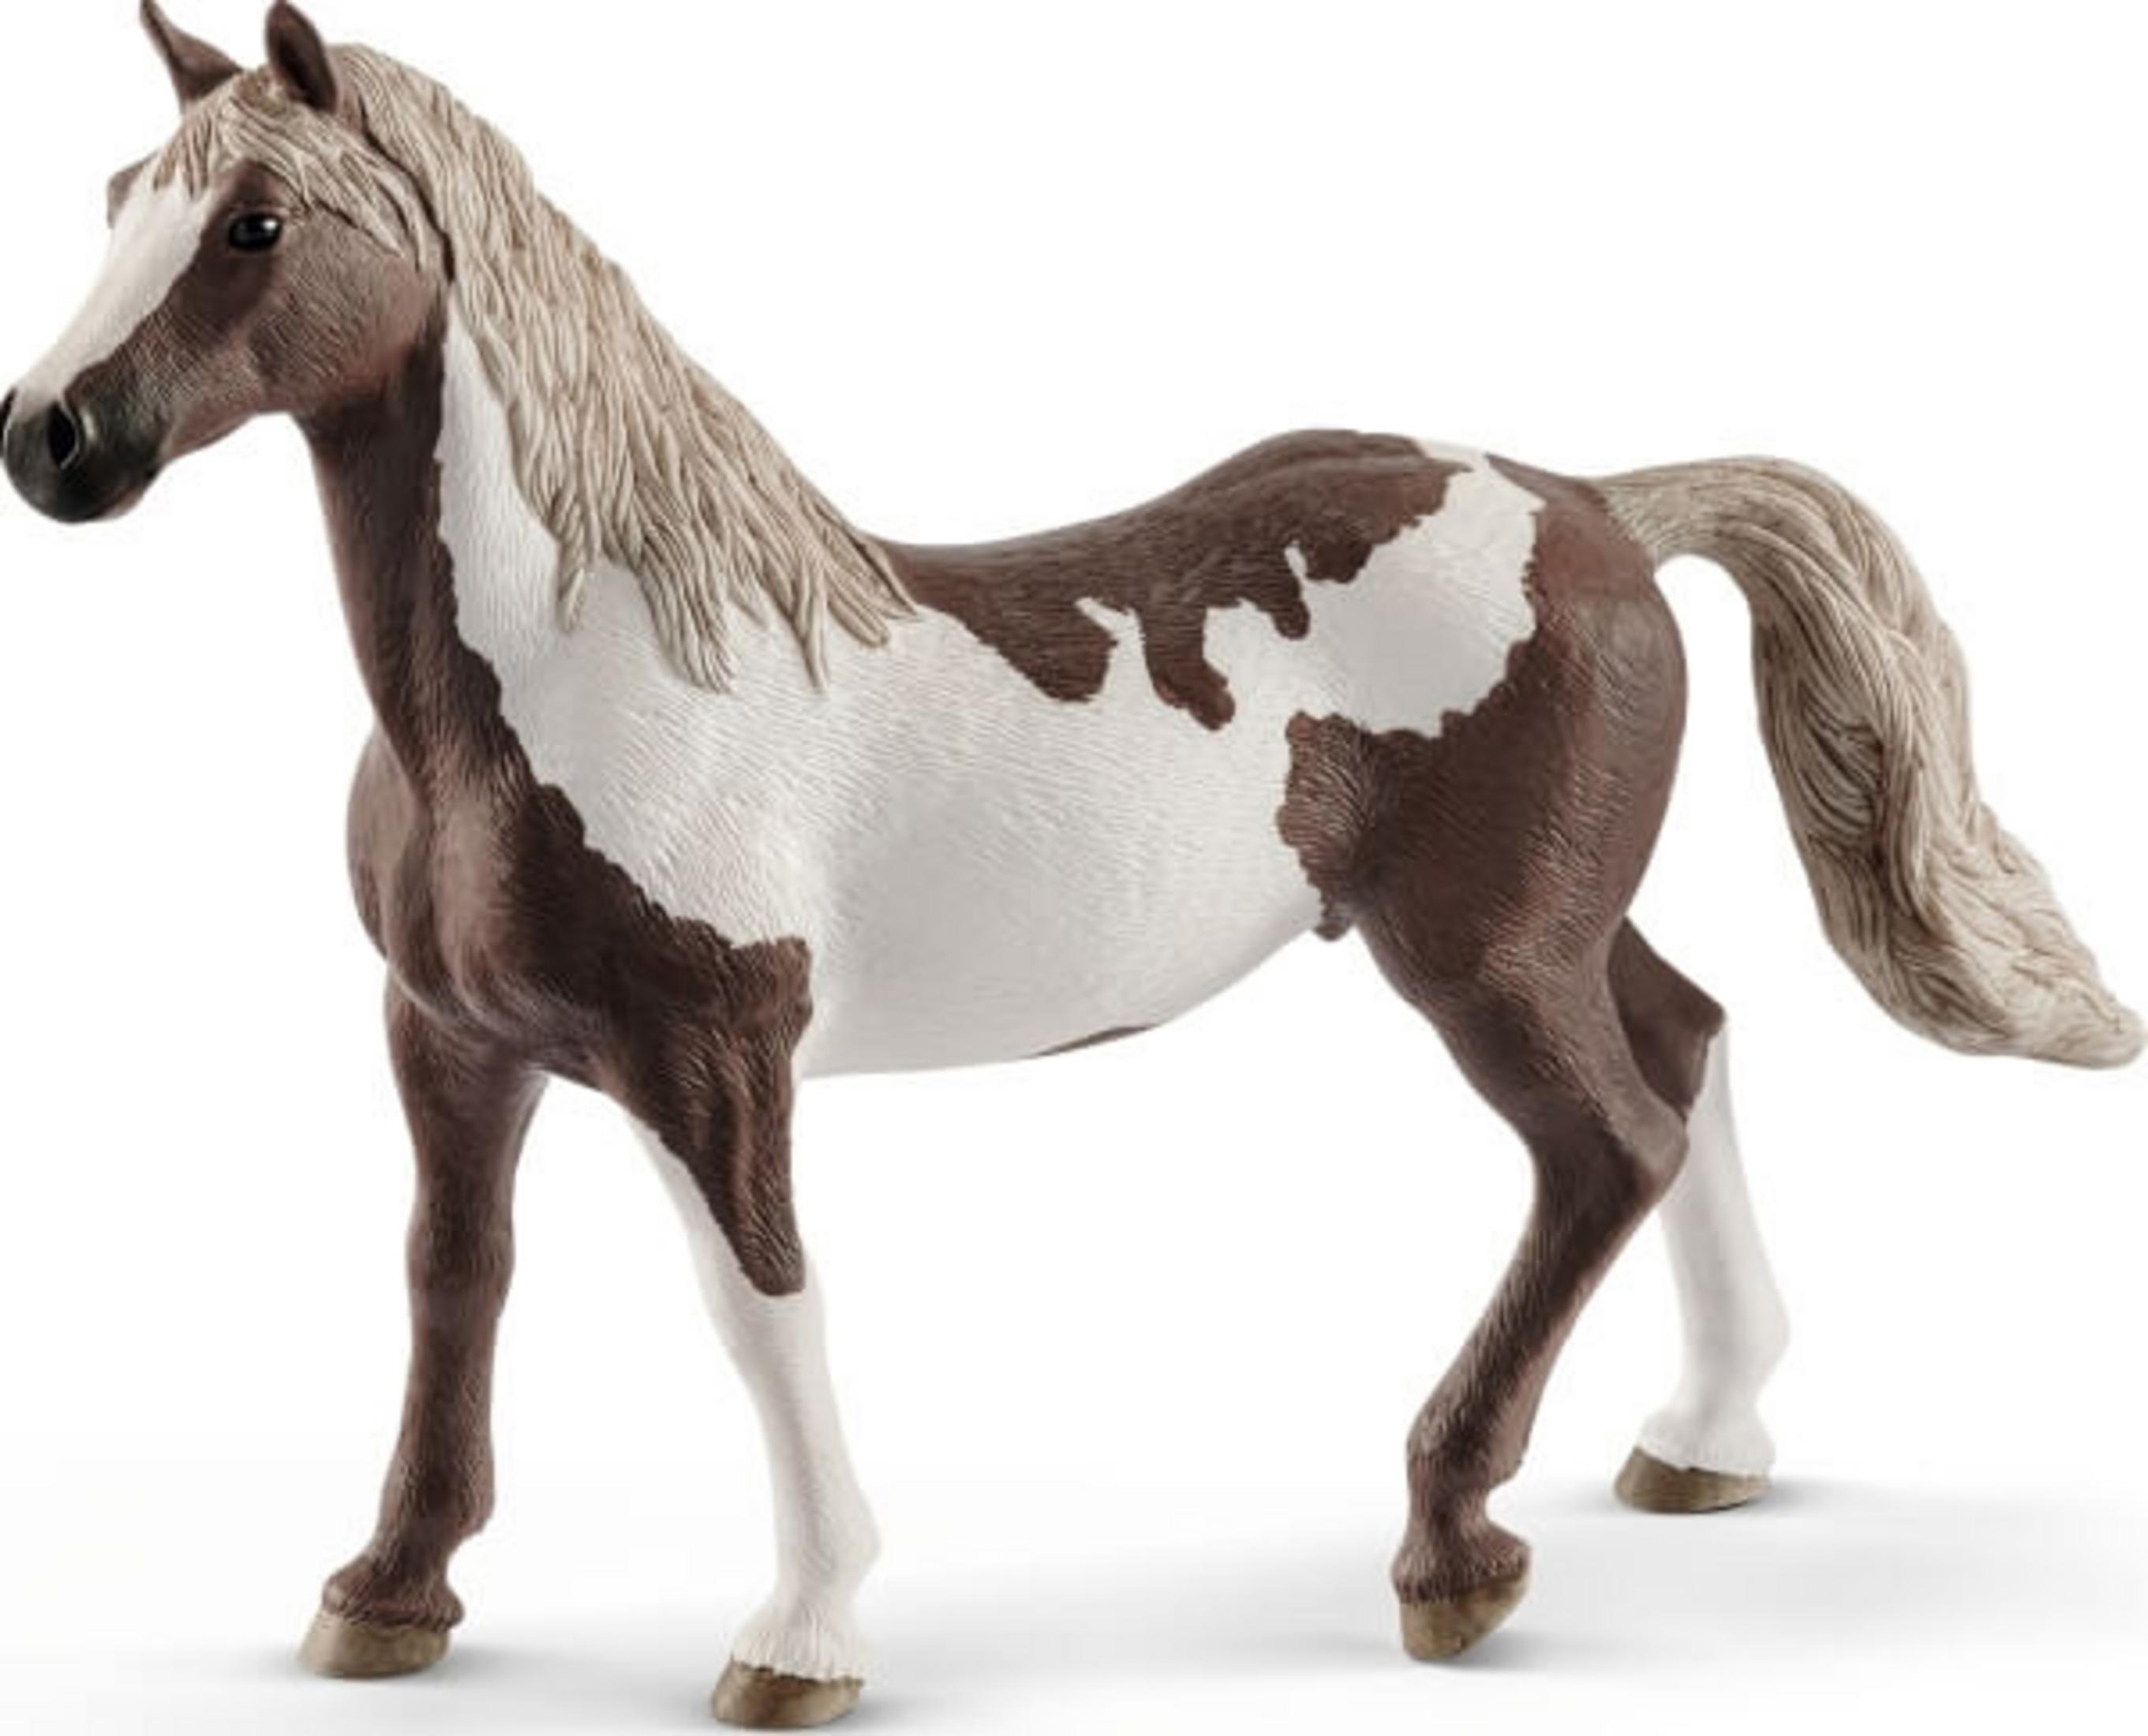 HORSE WALLACH Spielfigur PAINT Mehrfarbig HC 13885 SCHLEICH